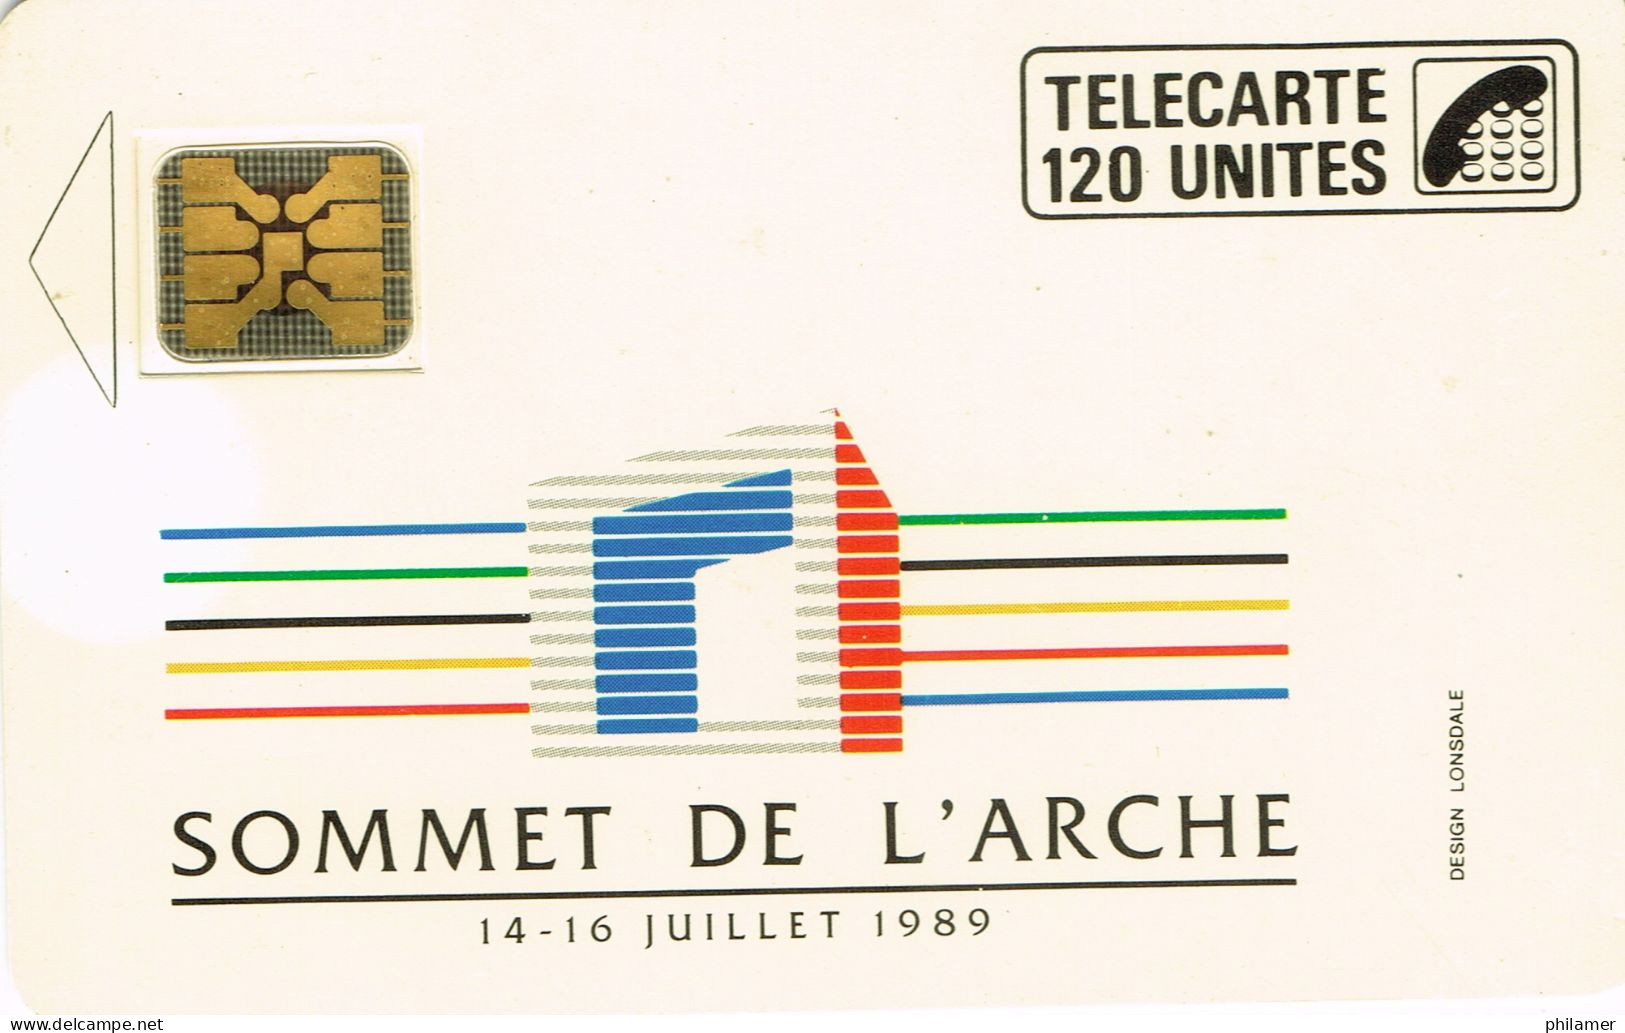 France French Telecarte Phonecard Interne C42 Sommet De L'arche 1989 France Telecom Paris UT BE - Internes